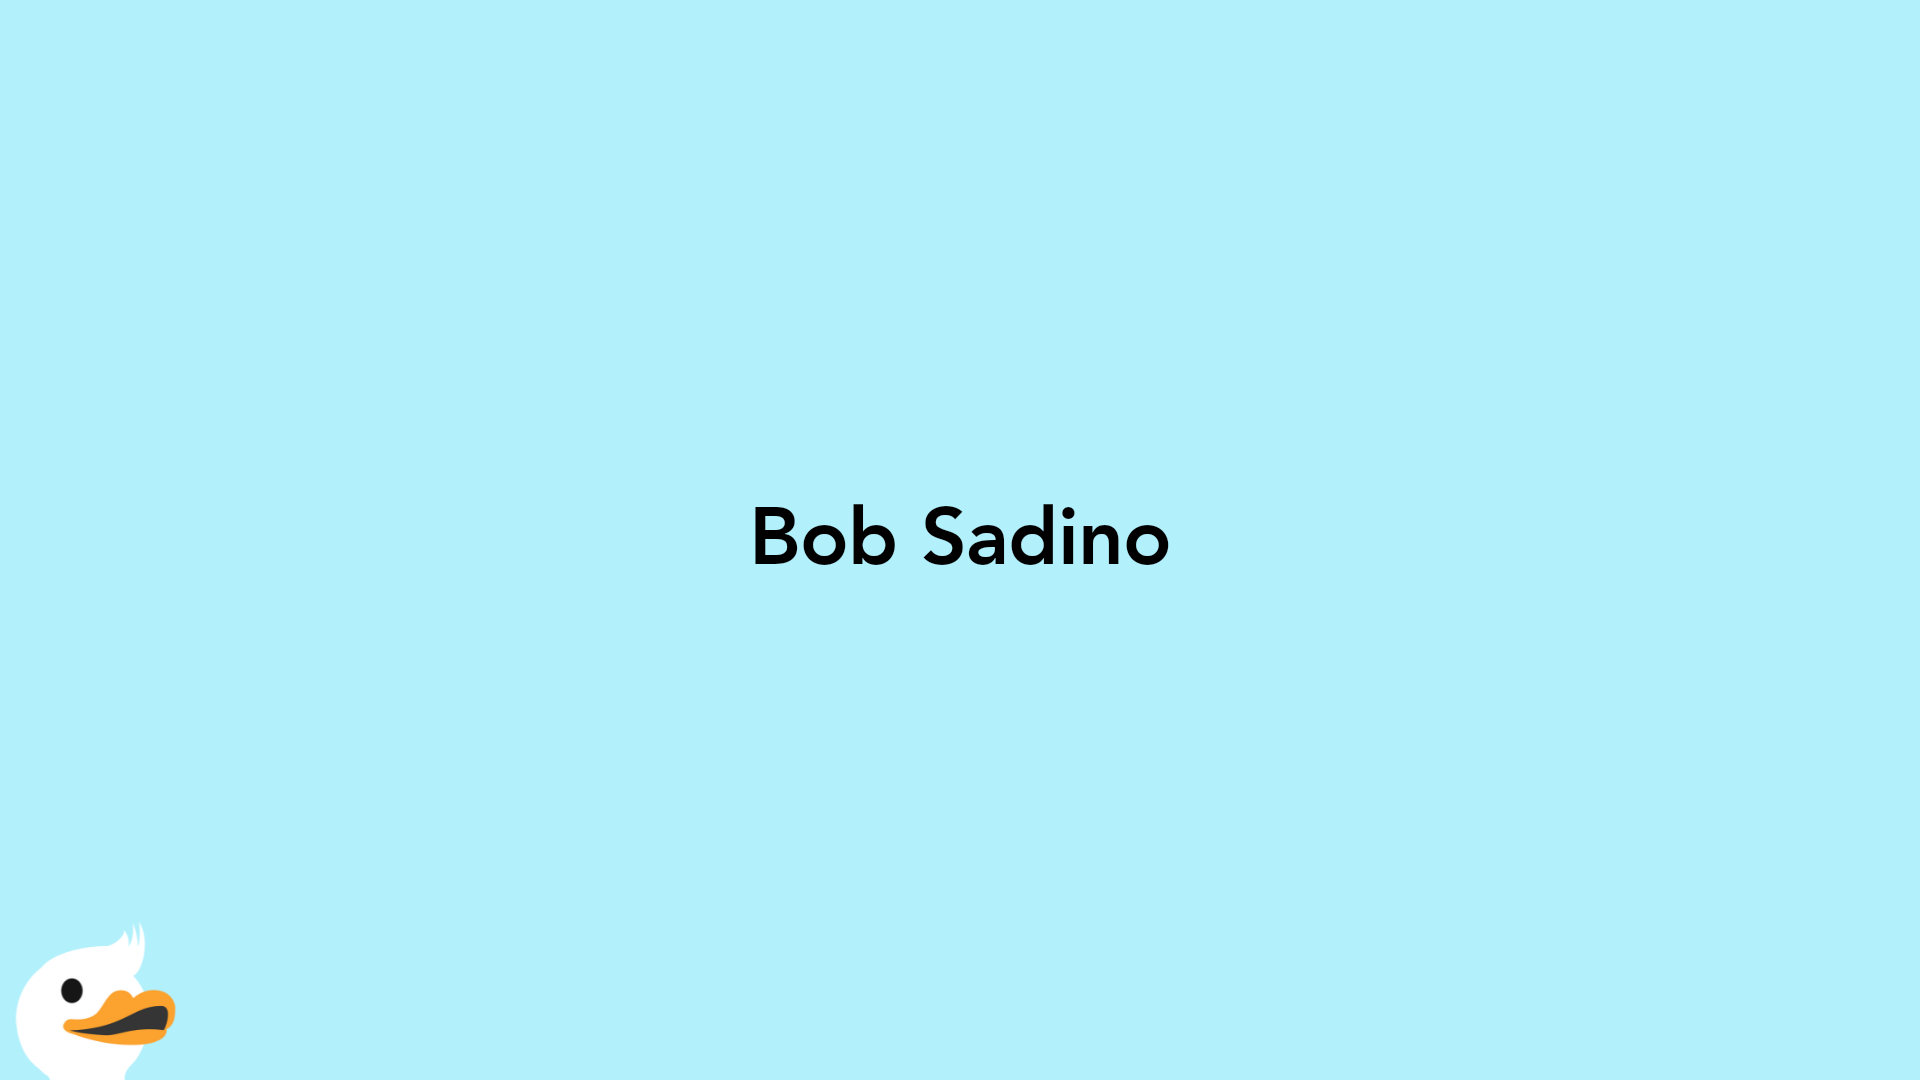 Bob Sadino